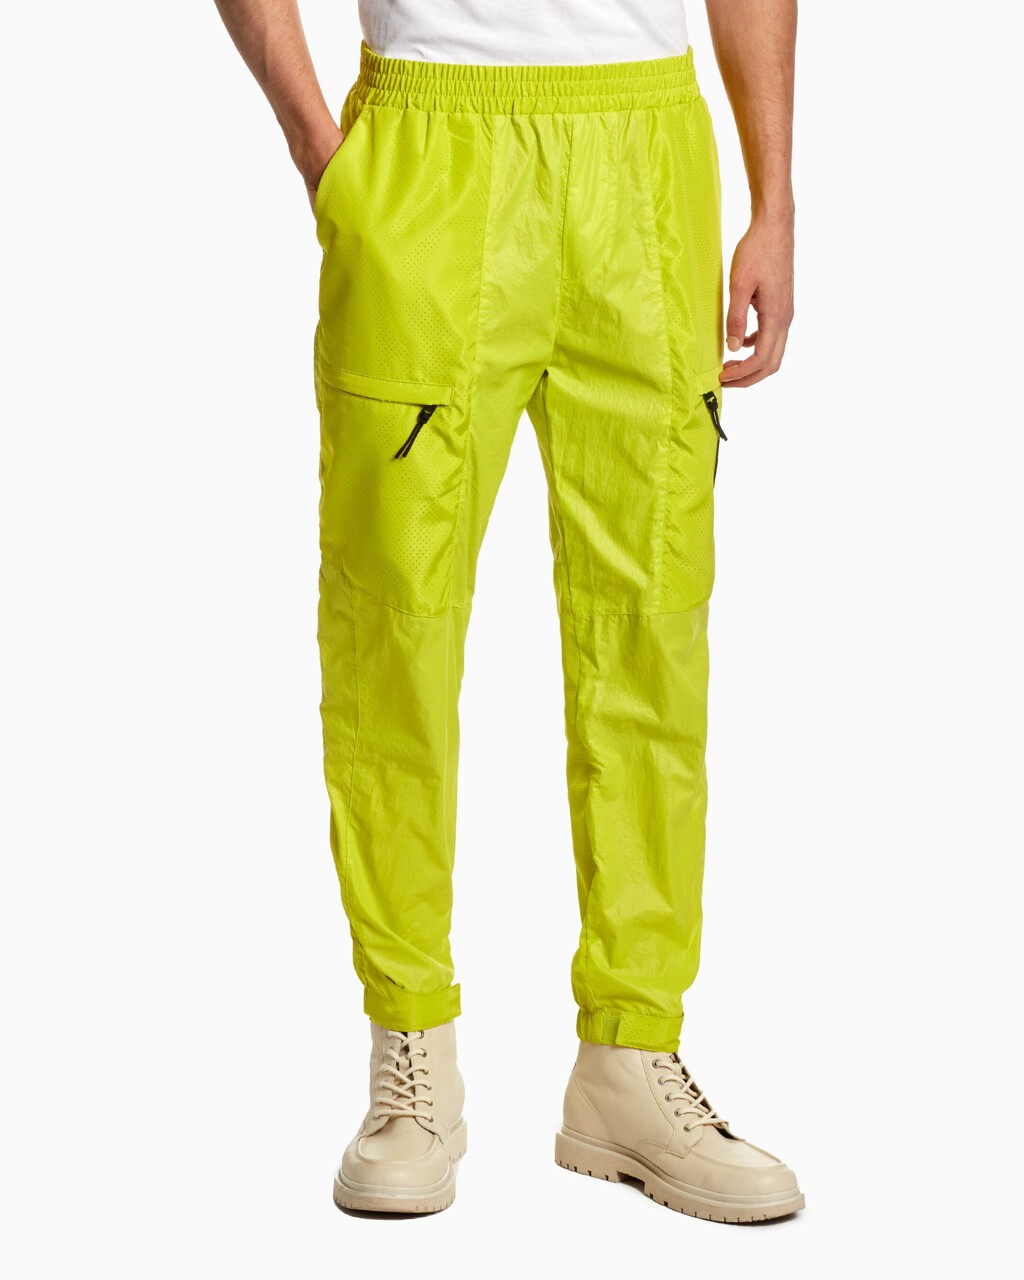 Reimagine Nature 孔洞裝飾工裝褲, Lemon Lime, hi-res